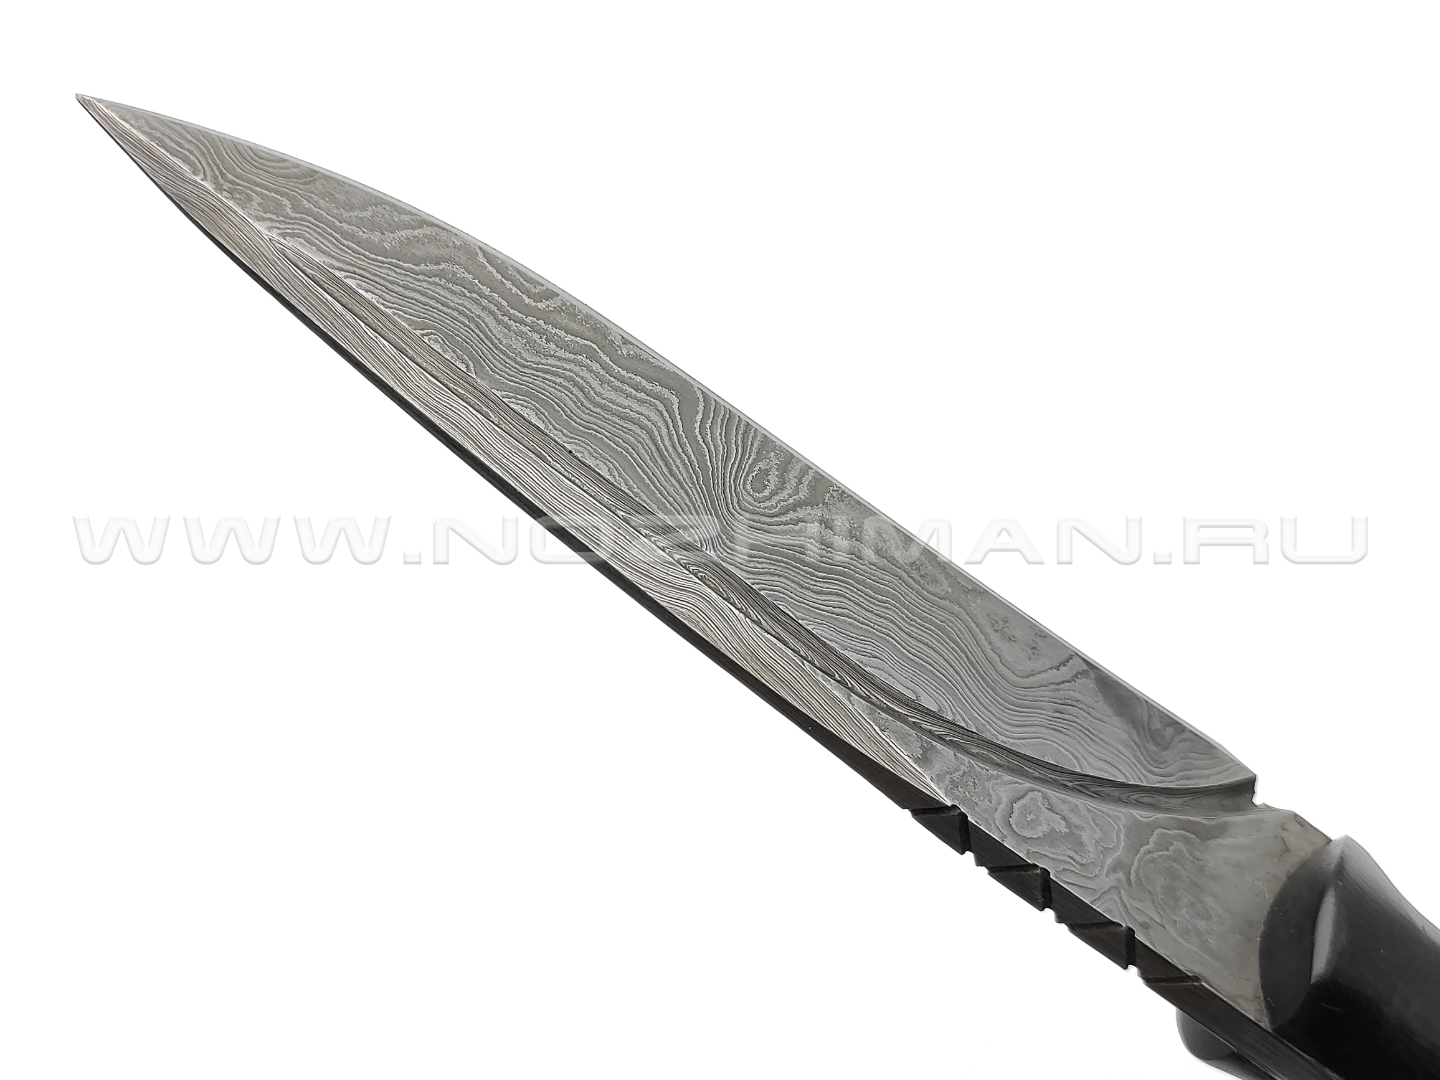 Нож Енот-2 цм, дамасская сталь, рукоять черный граб (Поддубный В. В.)